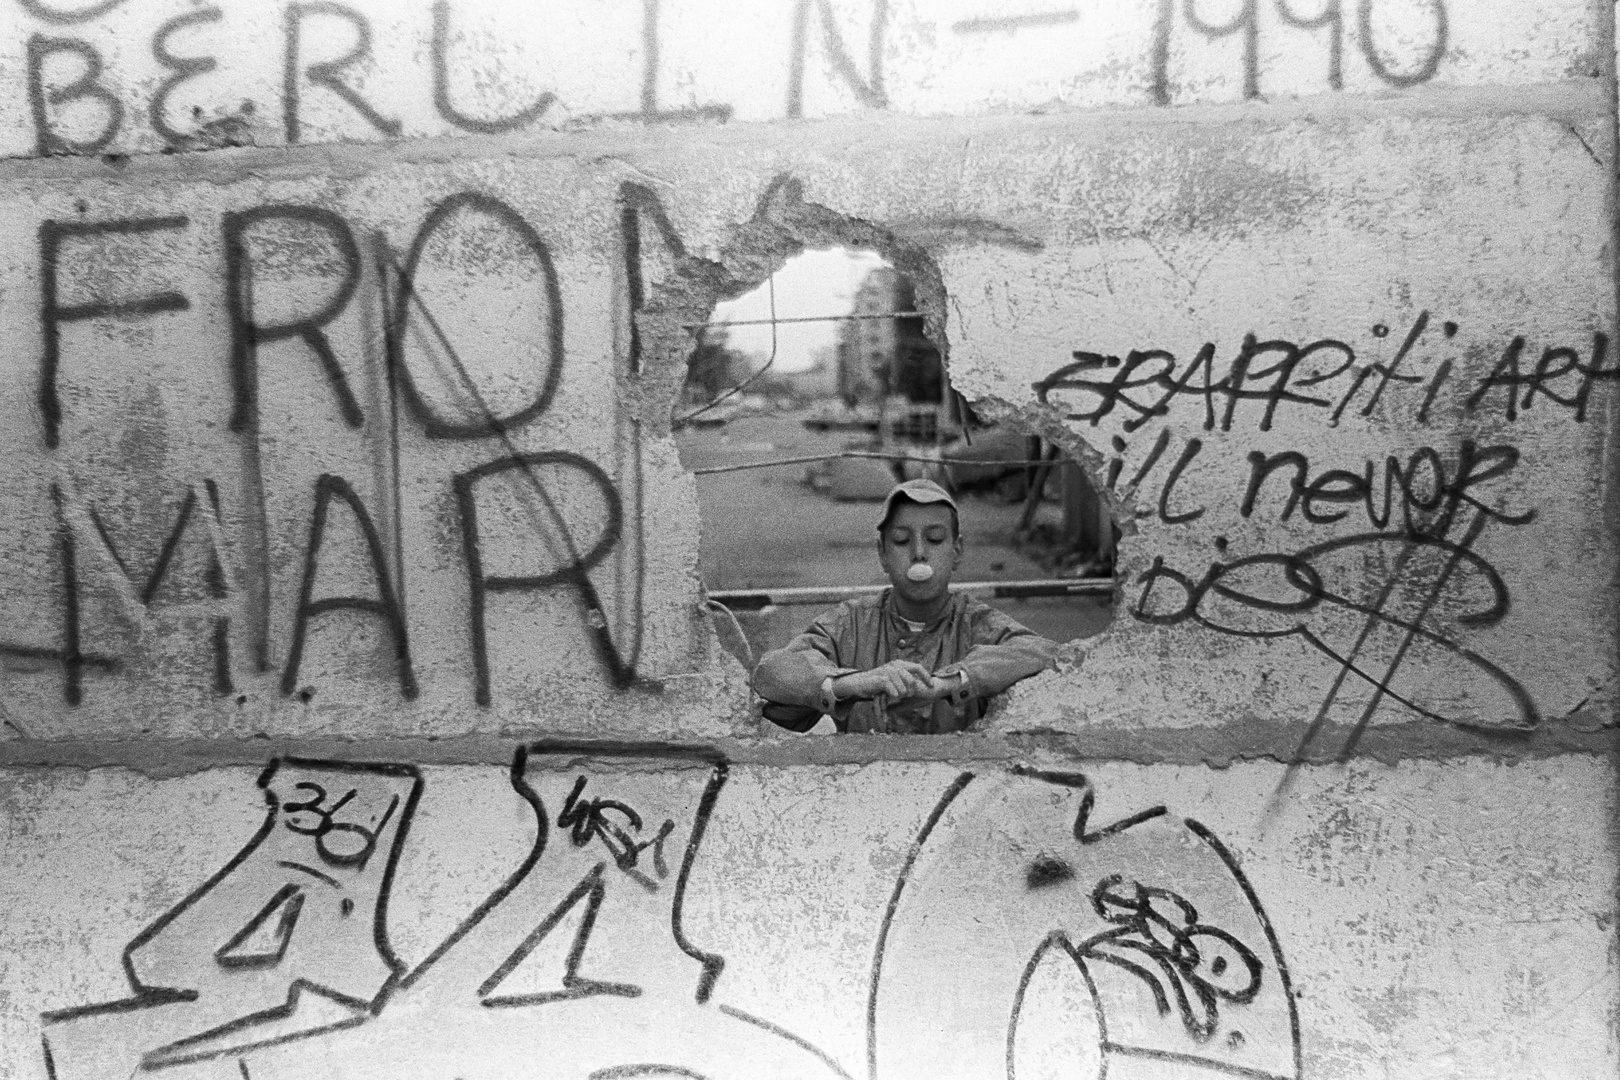 Die Blase - Berlin, 1990